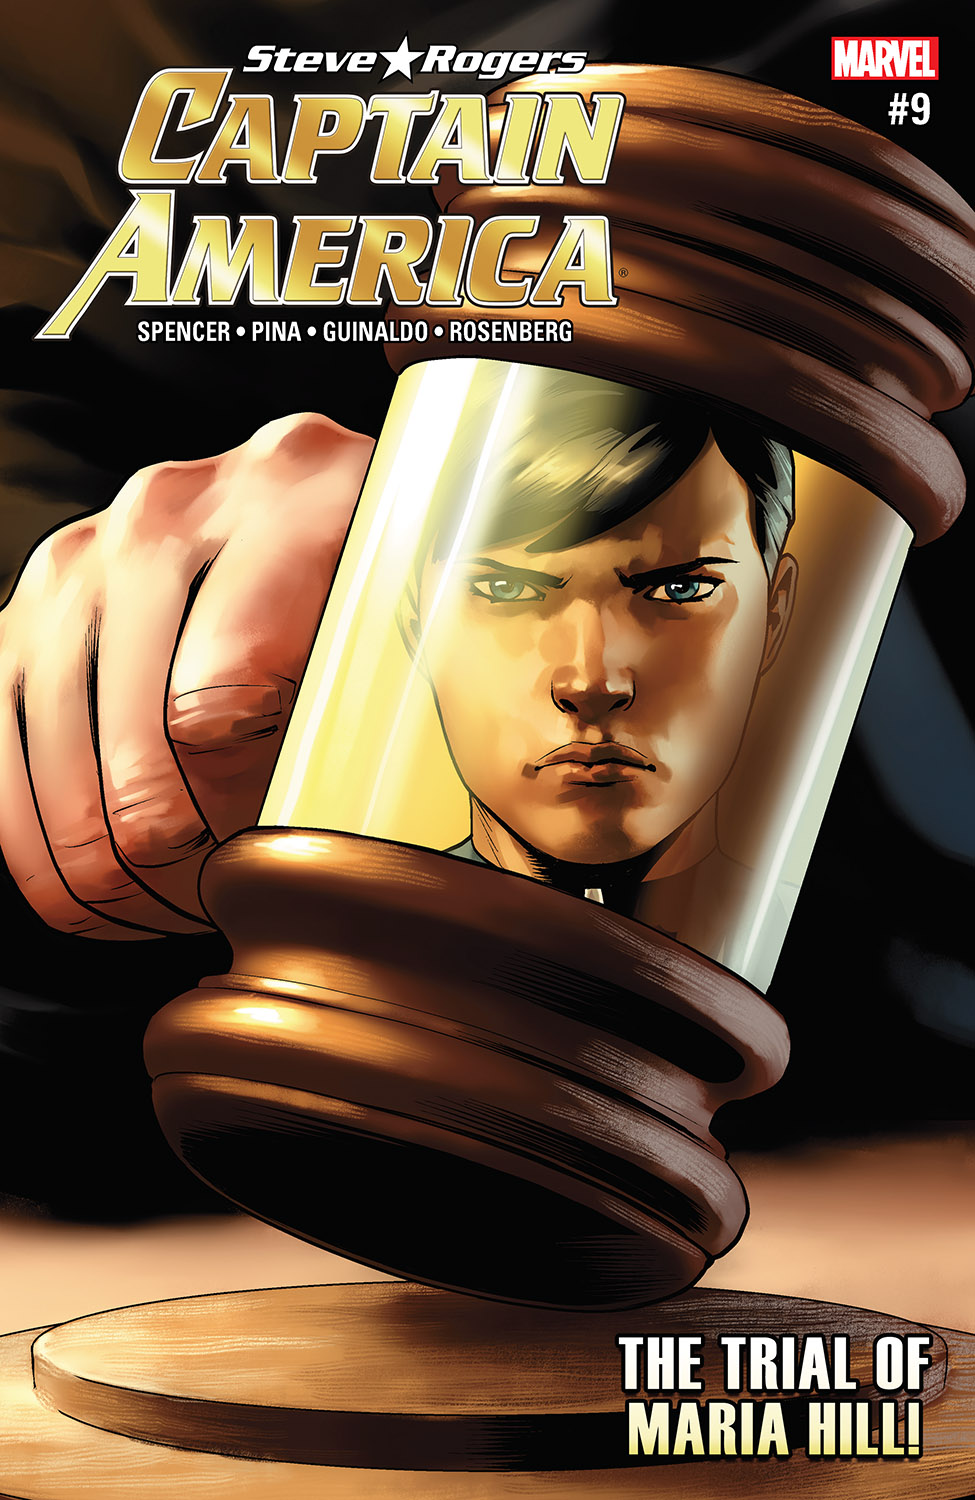 Captain America: Steve Rogers (2016) #9